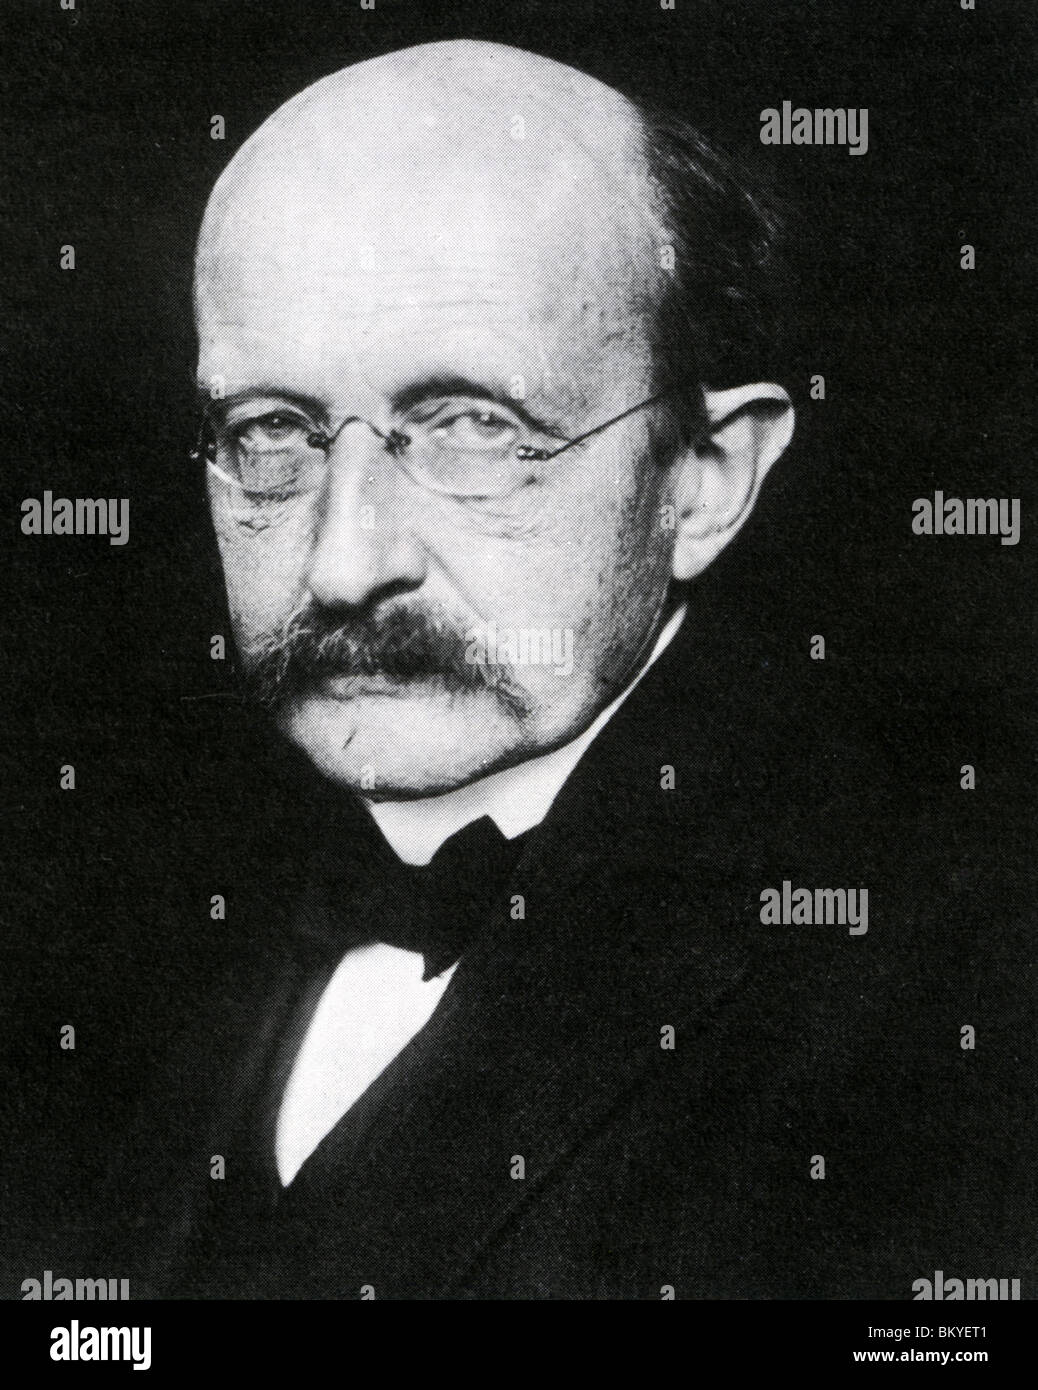 MAX PLANCK - fisico tedesco meglio conosciuto per la sua teoria della meccanica quantistica (1858-1947) Foto Stock